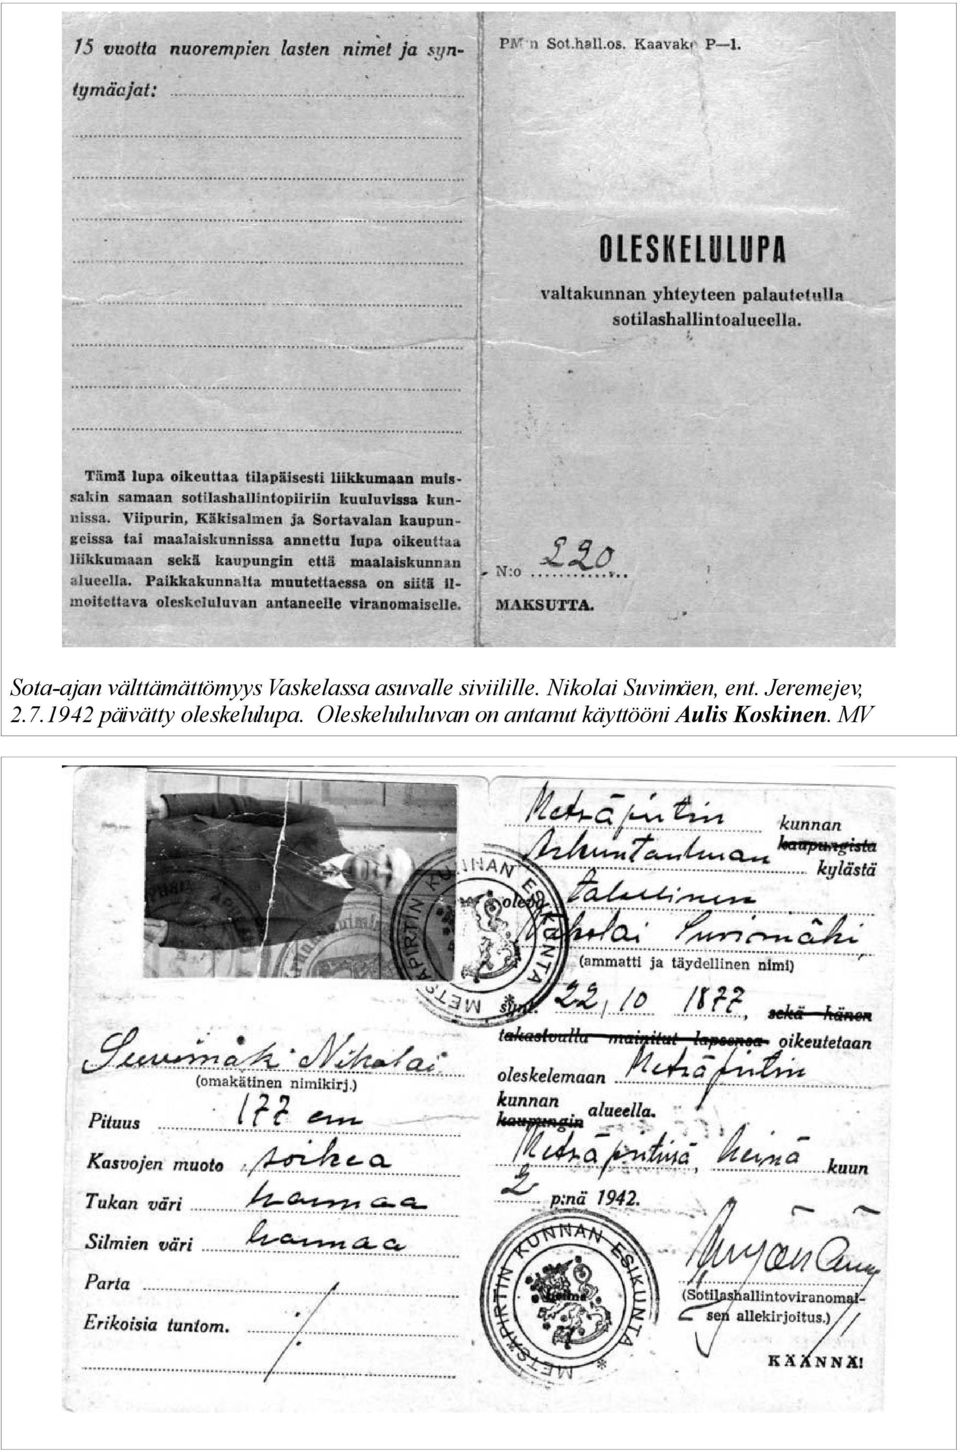 Jeremejev, 2.7.1942 päivätty oleskelulupa.